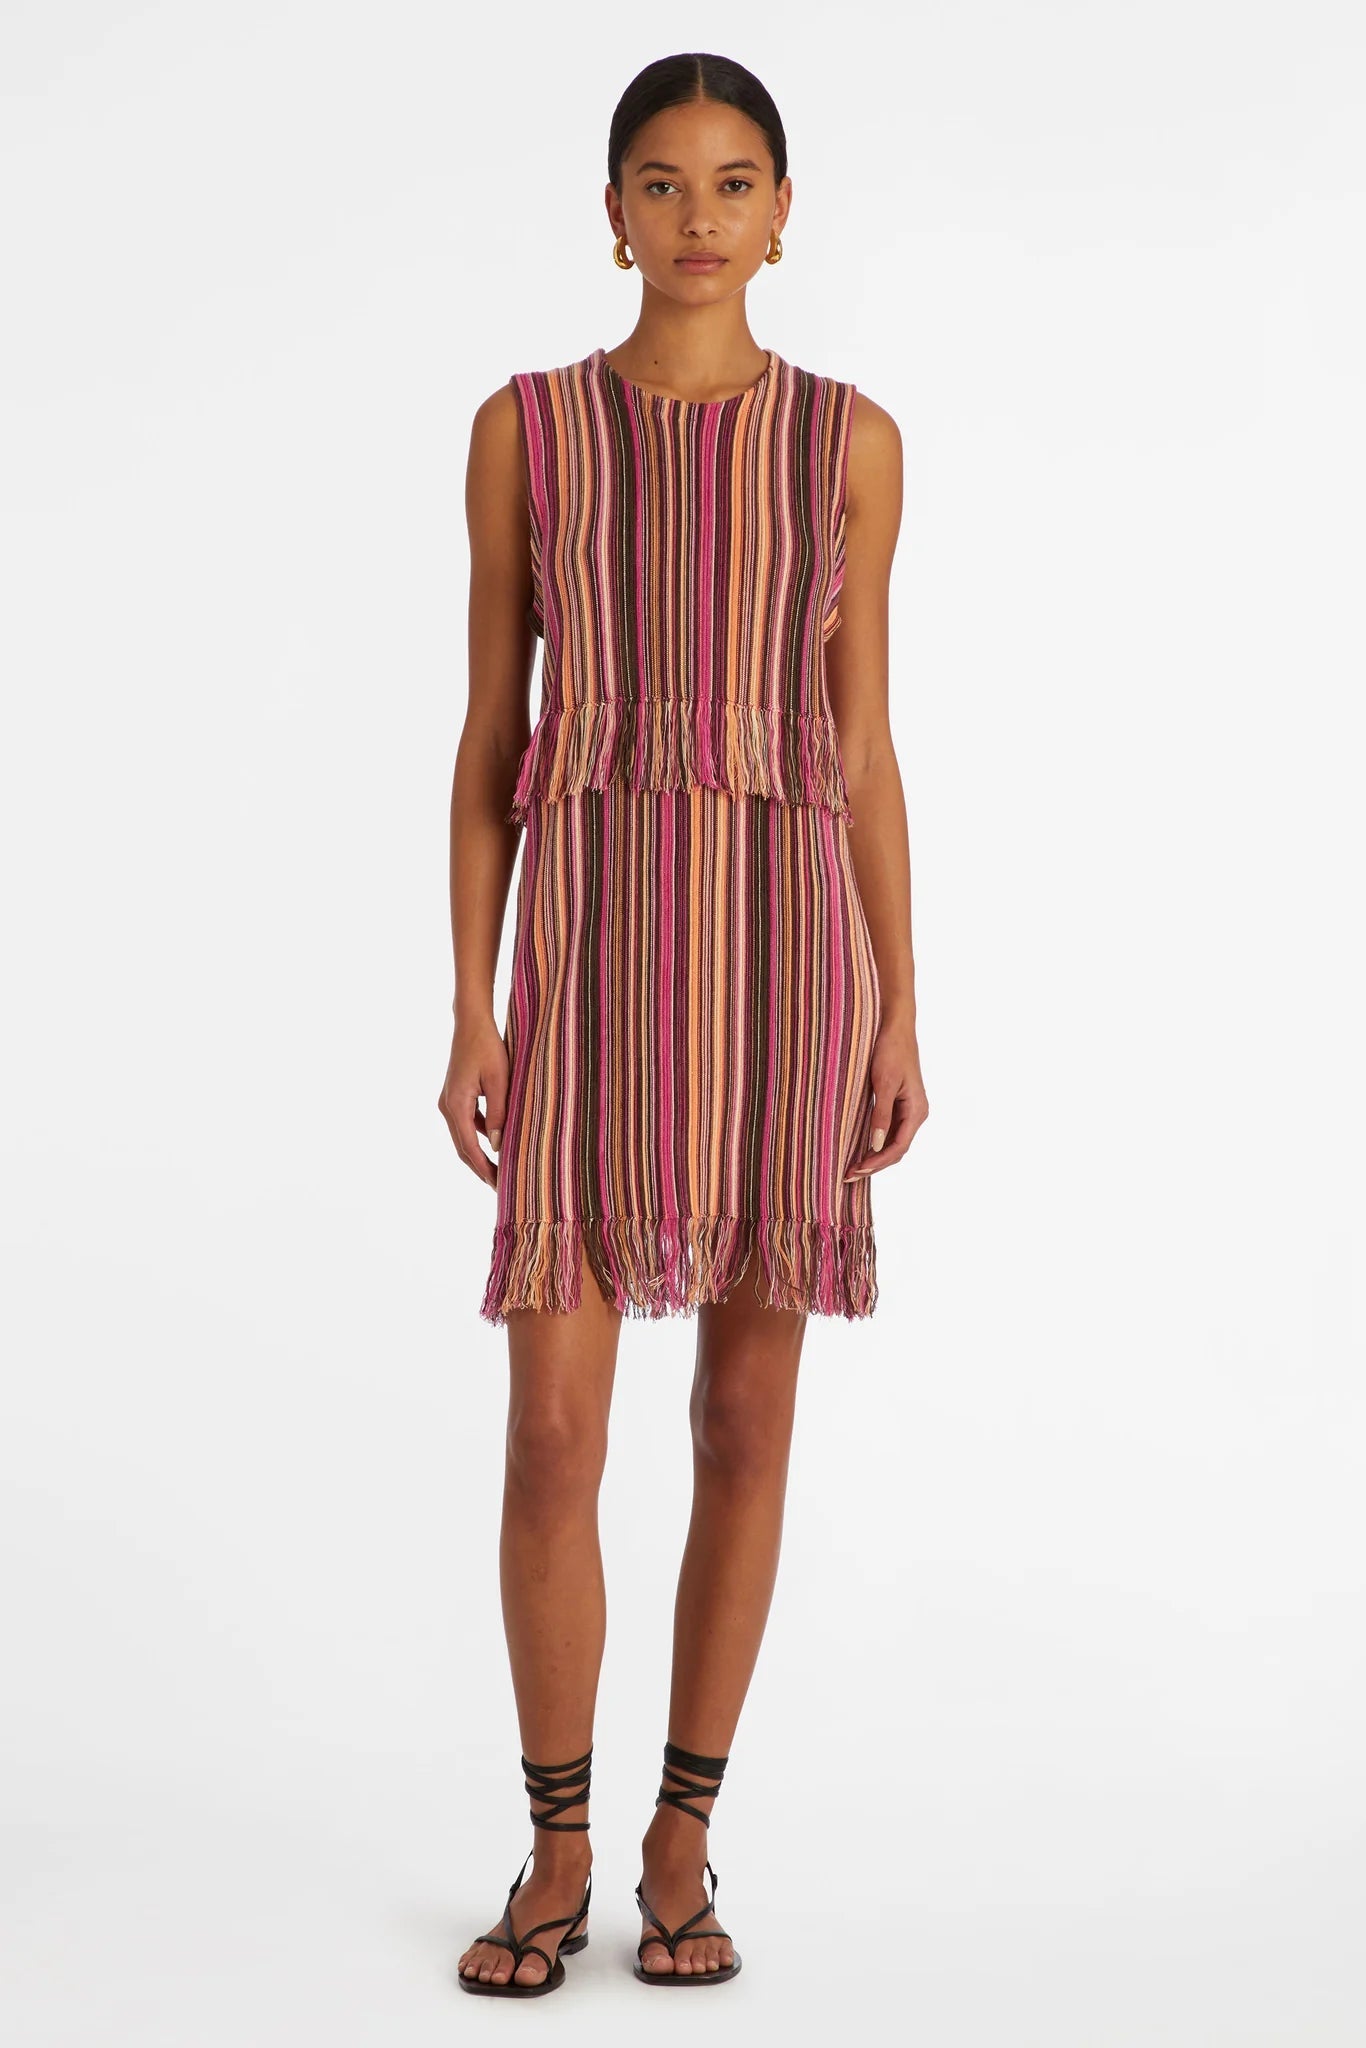 Marie Oliver Kenyon Dress in Meadow Stripe - Estilo Boutique